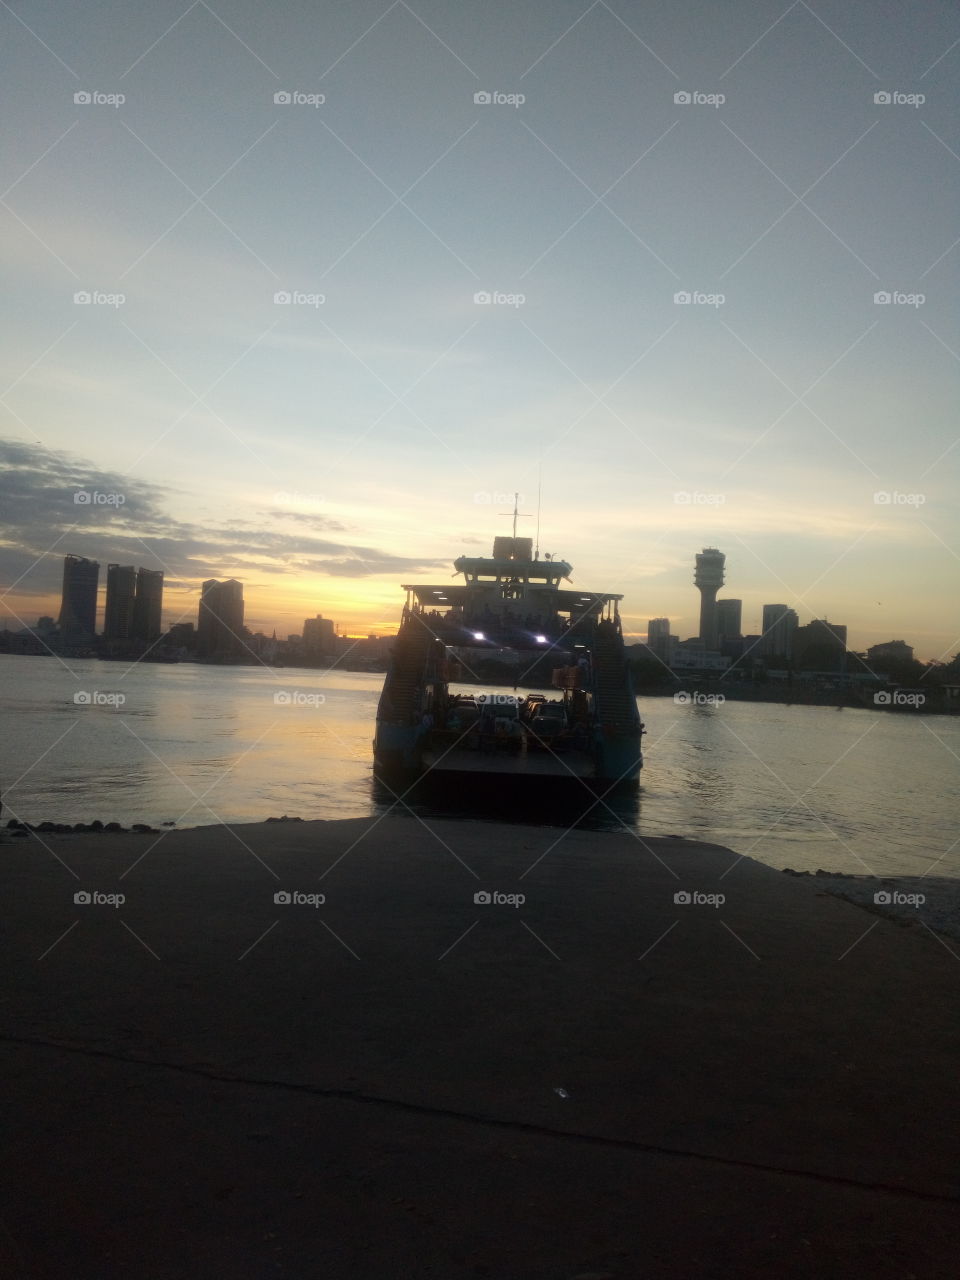 ferry cross sunset view